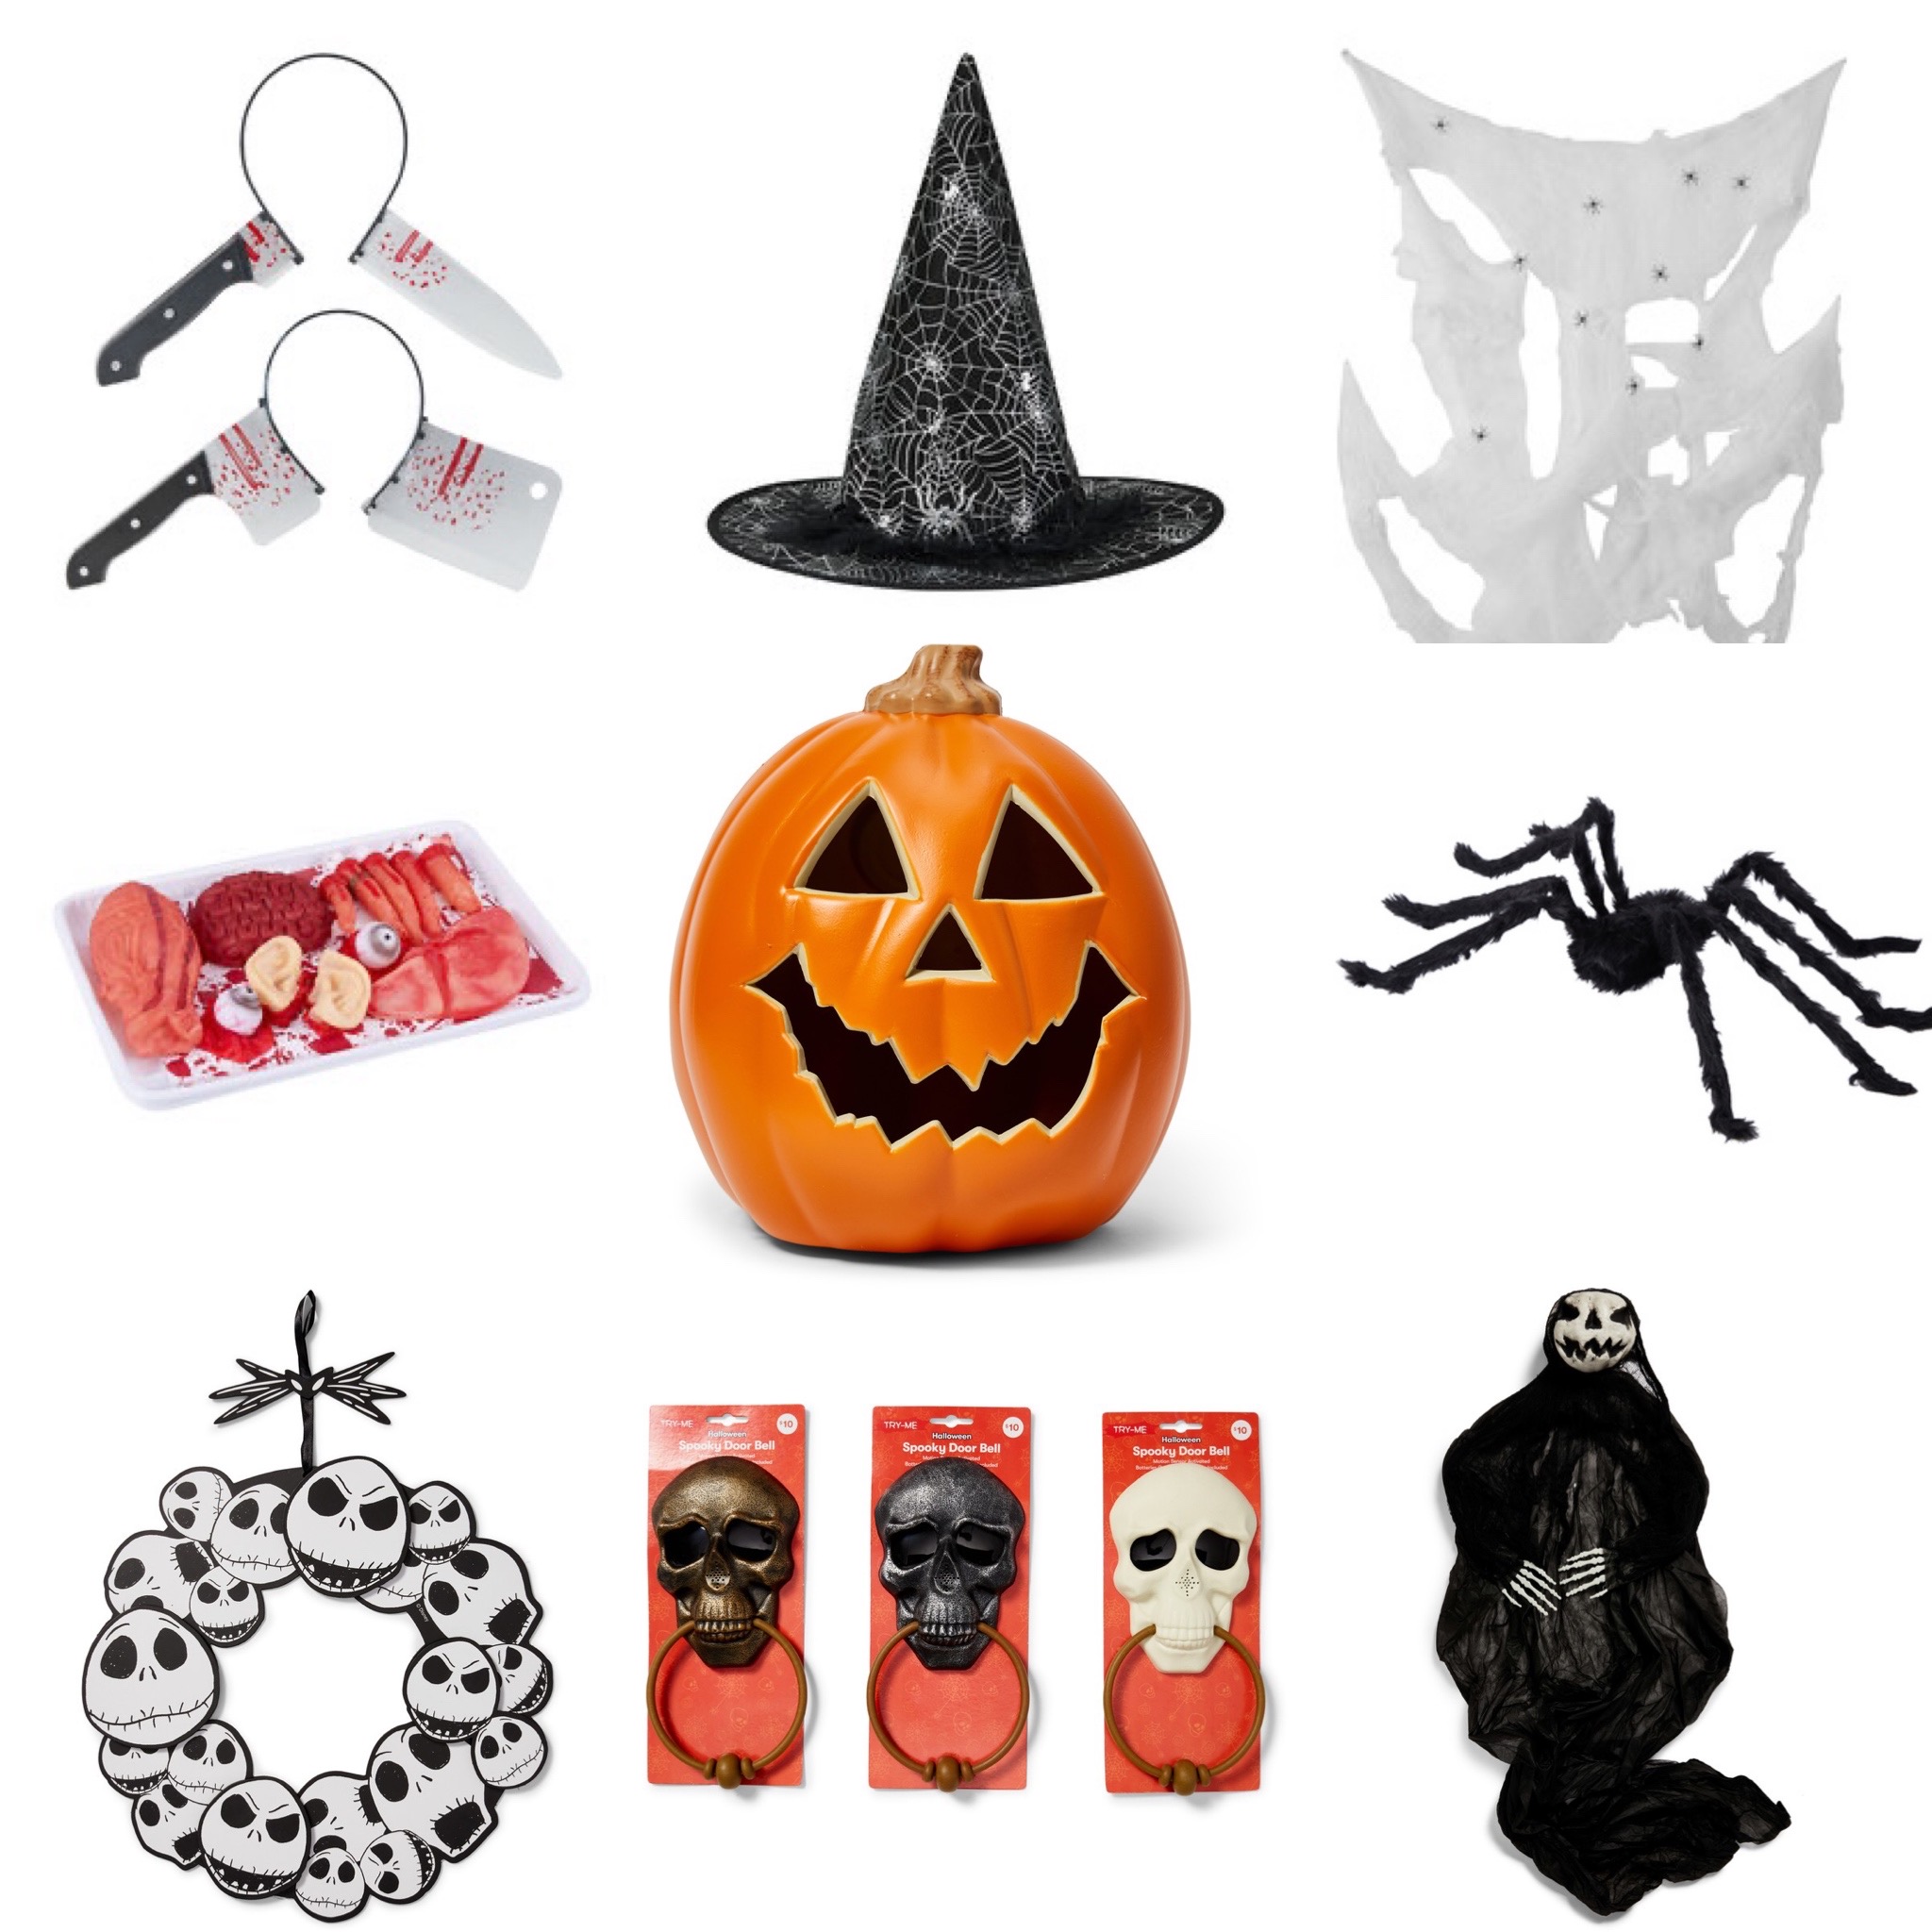 Mua kmart halloween decorations để trang trí ngày lễ Halloween ...